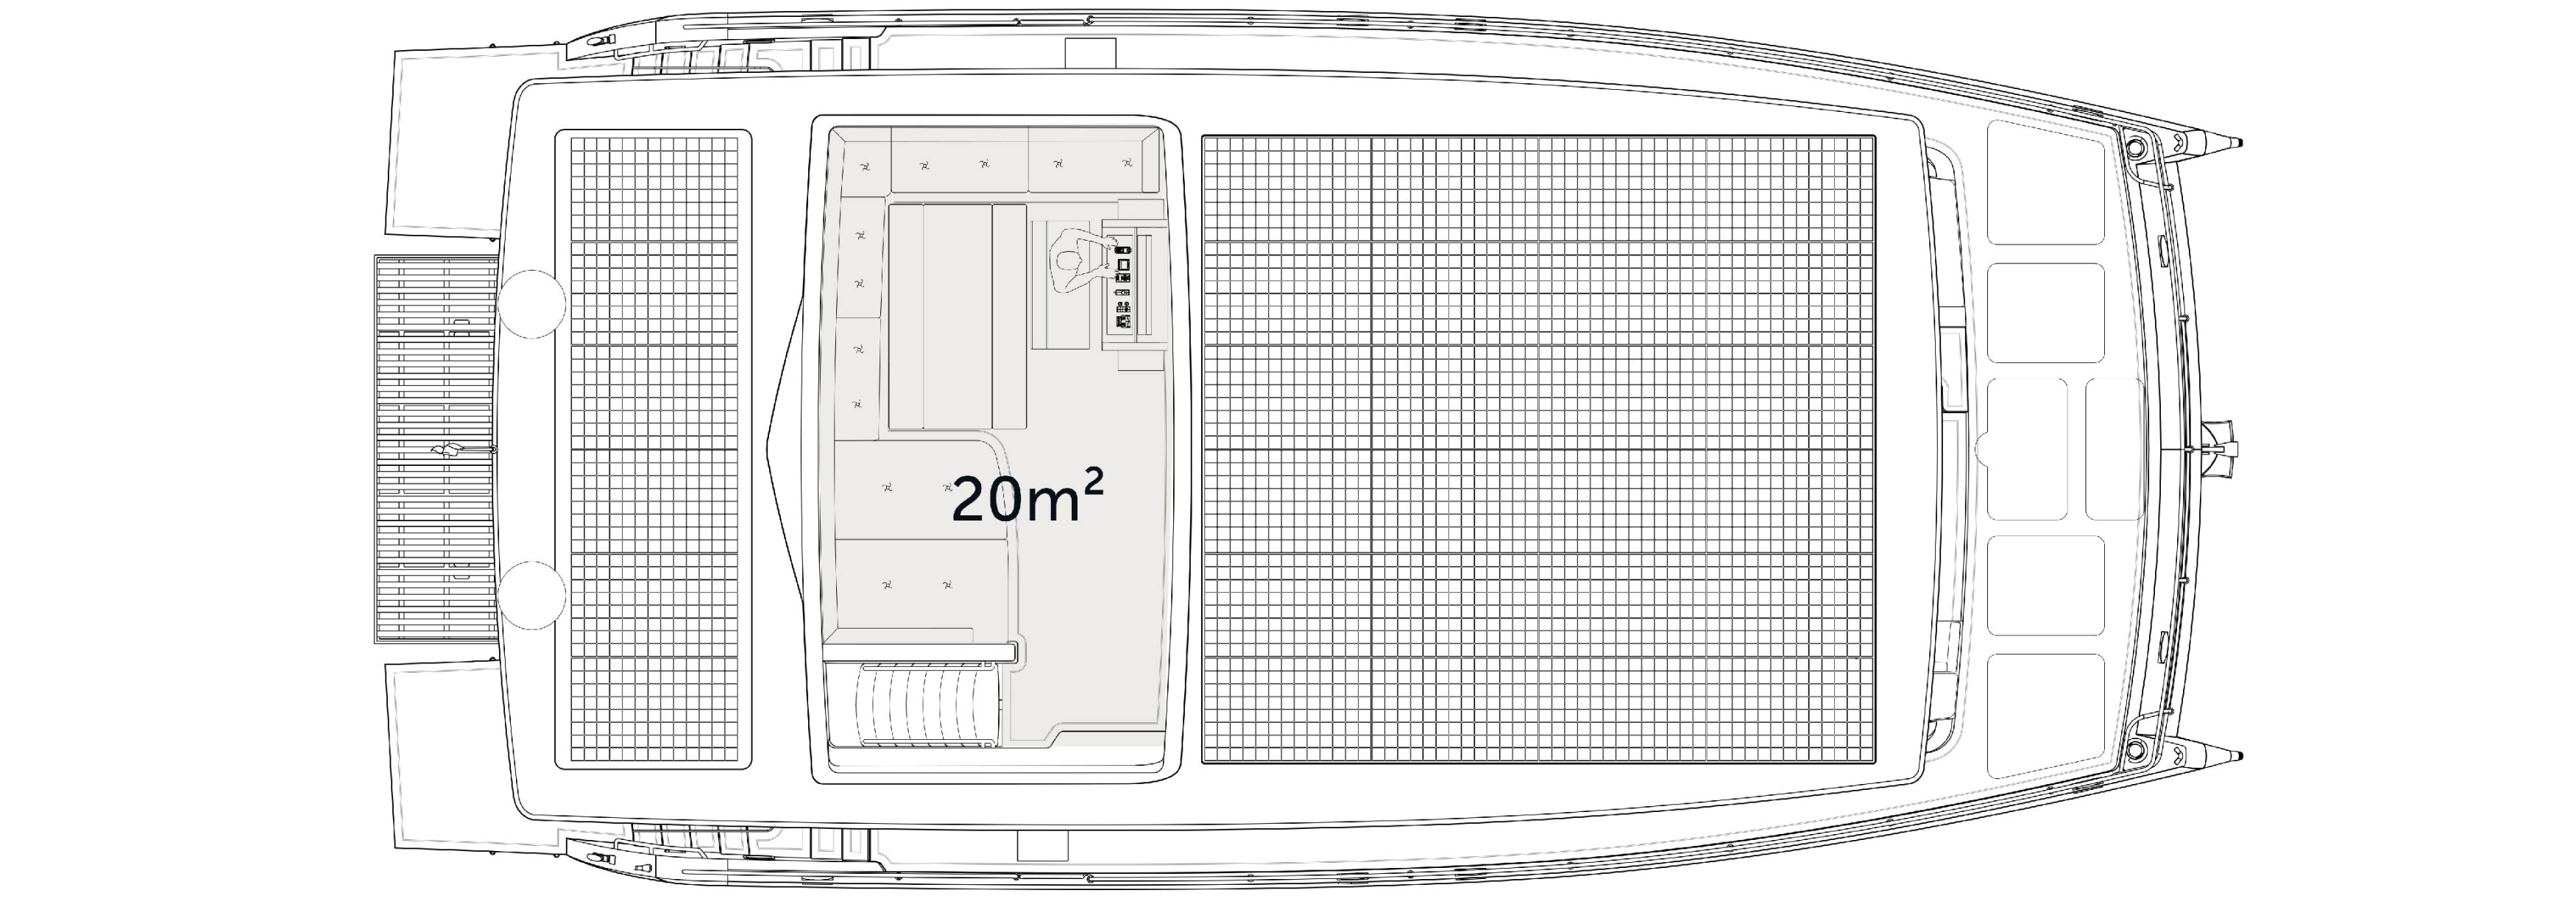 Yacht flybridge area plan